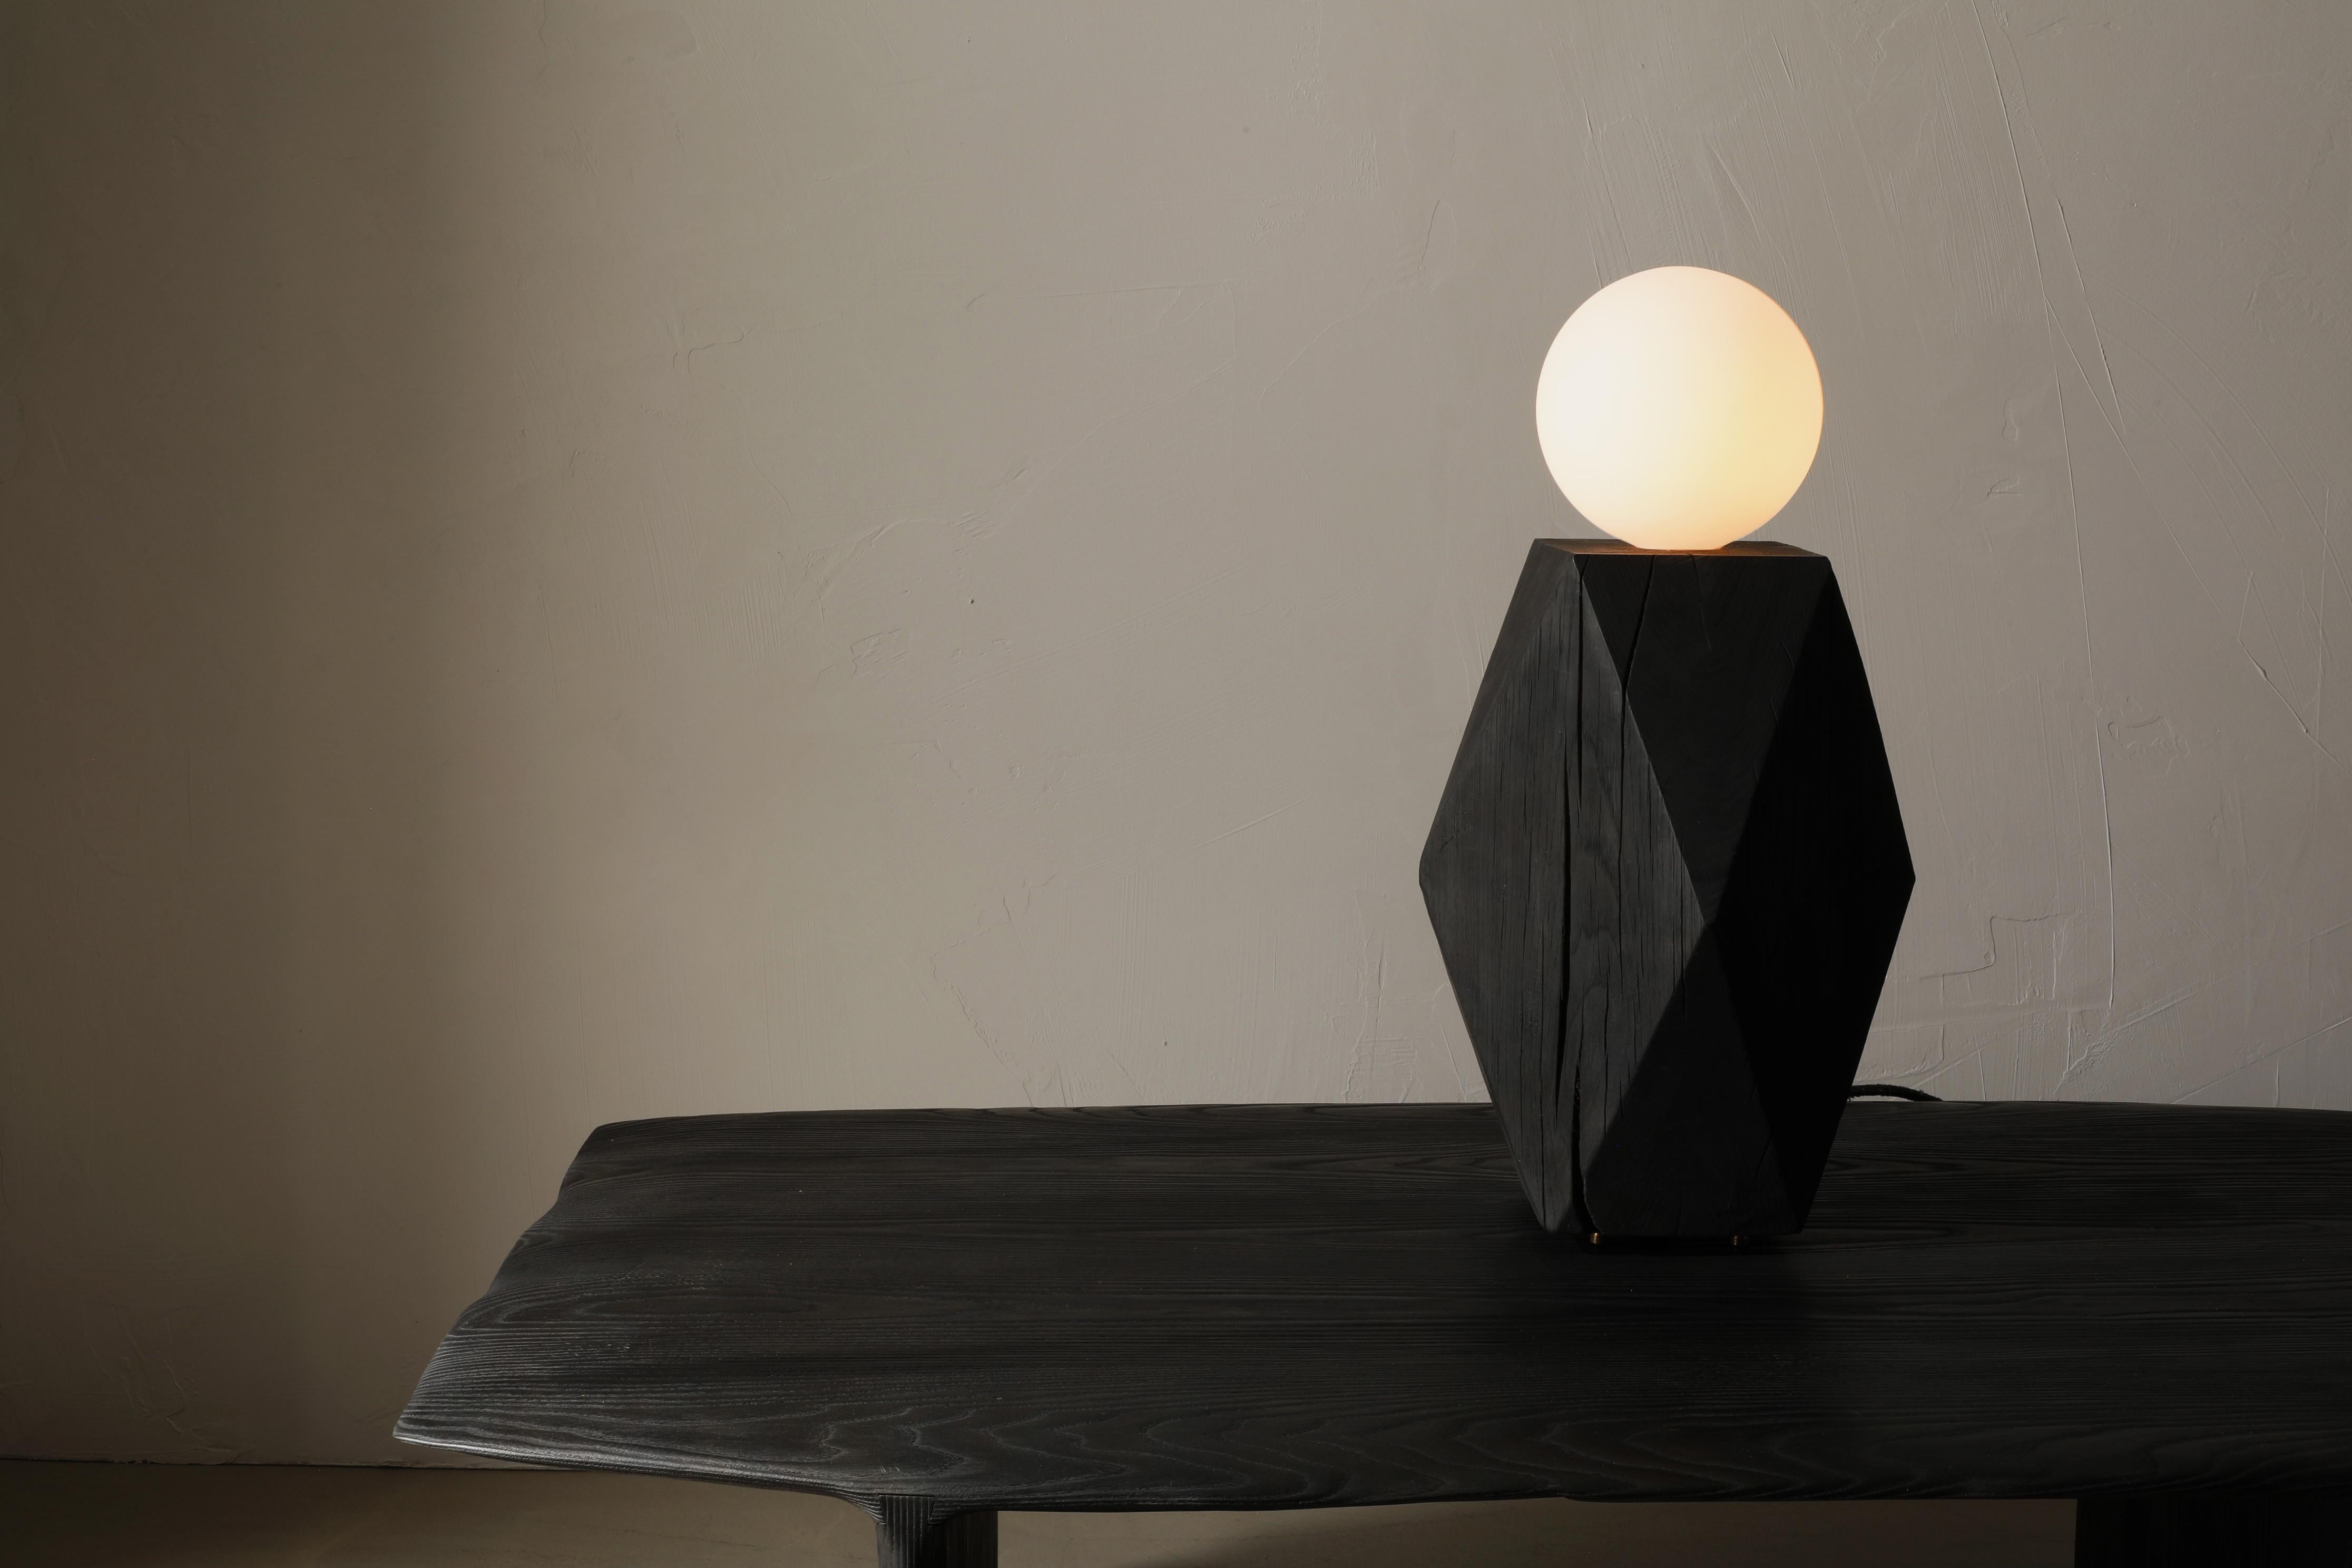 La lampe Miter est une lampe de table en chêne massif dotée d'une grande ampoule à globe dépoli. La lampe repose sur quatre pieds en bronze et s'allume sur le cordon à l'aide d'un variateur d'intensité.

La Collection MITER - une transformation